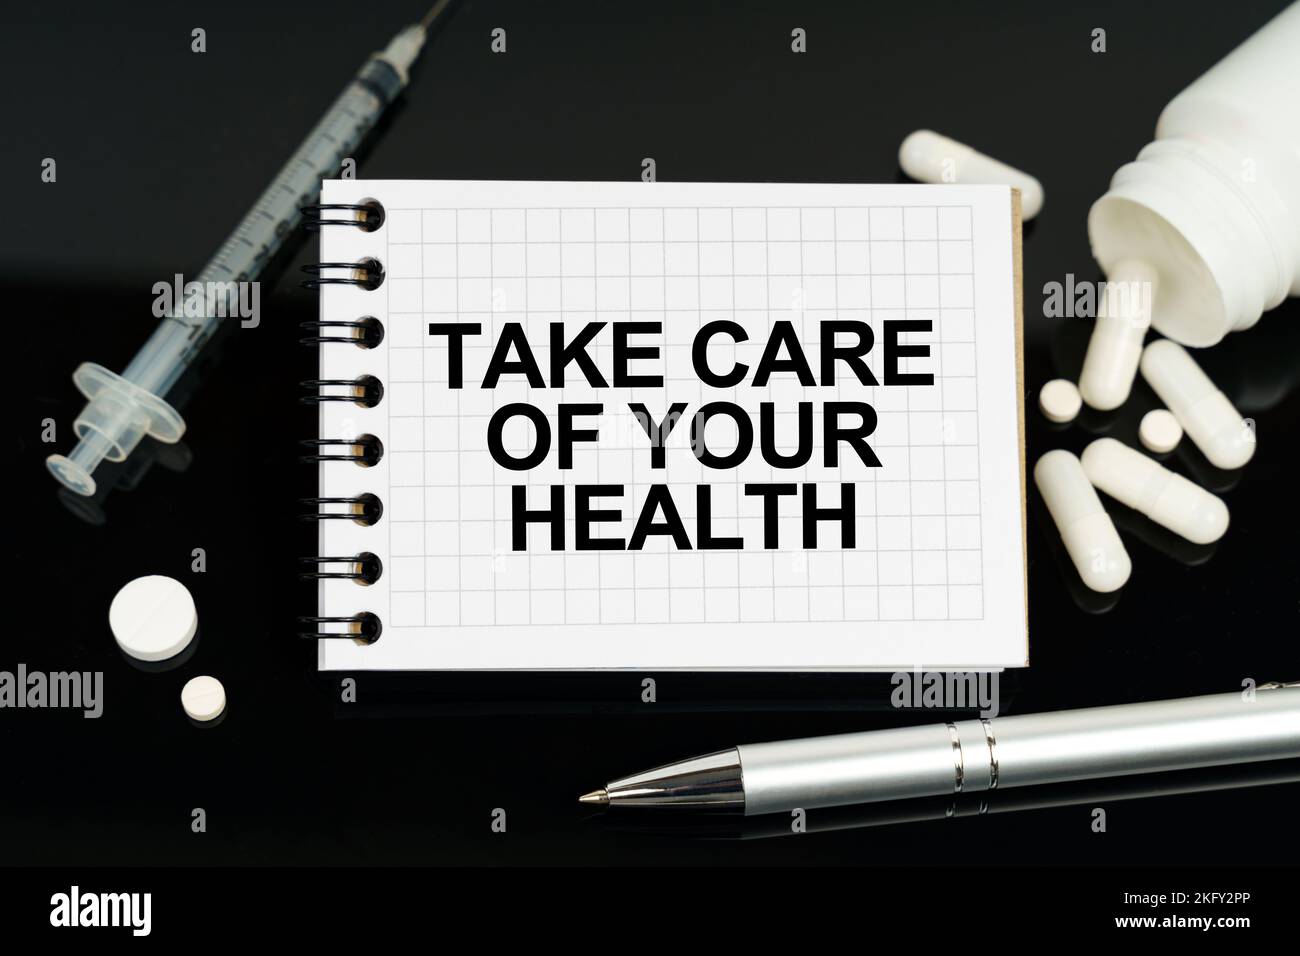 Concetto di medicina e assistenza sanitaria. Sulla superficie nera ci sono pillole, una siringa e un notebook con l'iscrizione - prendersi cura della vostra salute Foto Stock